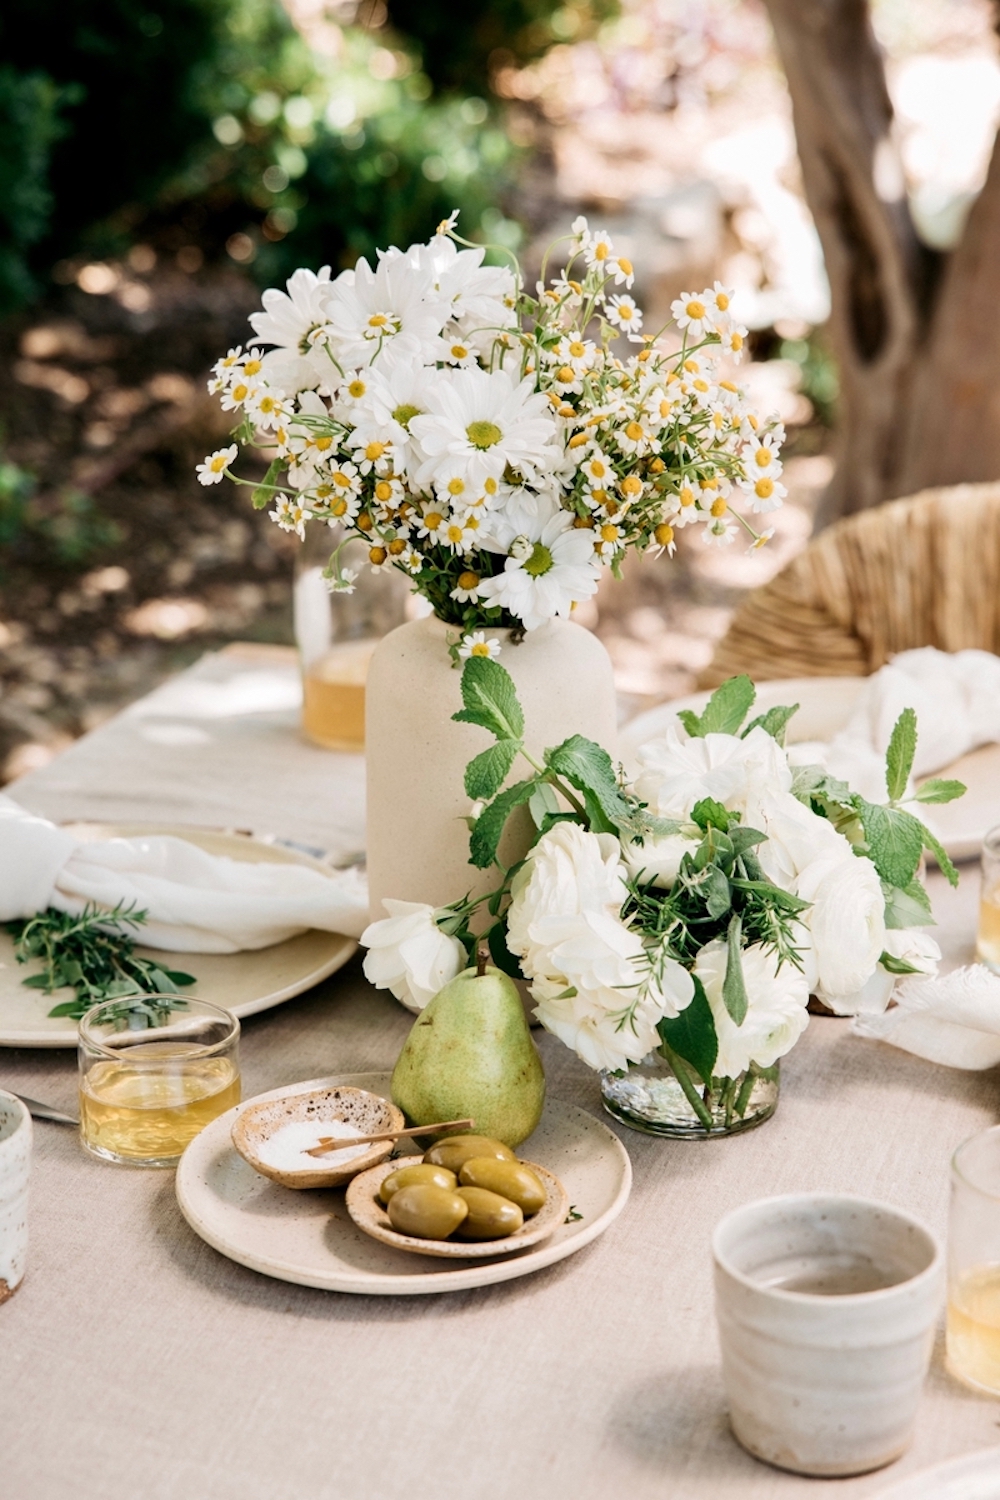 چیدمان میز بهاری در فضای باز با رومیزی کتان صورتی، قسمت مرکزی با کاسه های کوچک نمک، زیتون، و گلابی سبز، یک گل کوچک سفید وسط، و یک گلدان سنگی خالدار از گل های بابونه و گل های سفید.